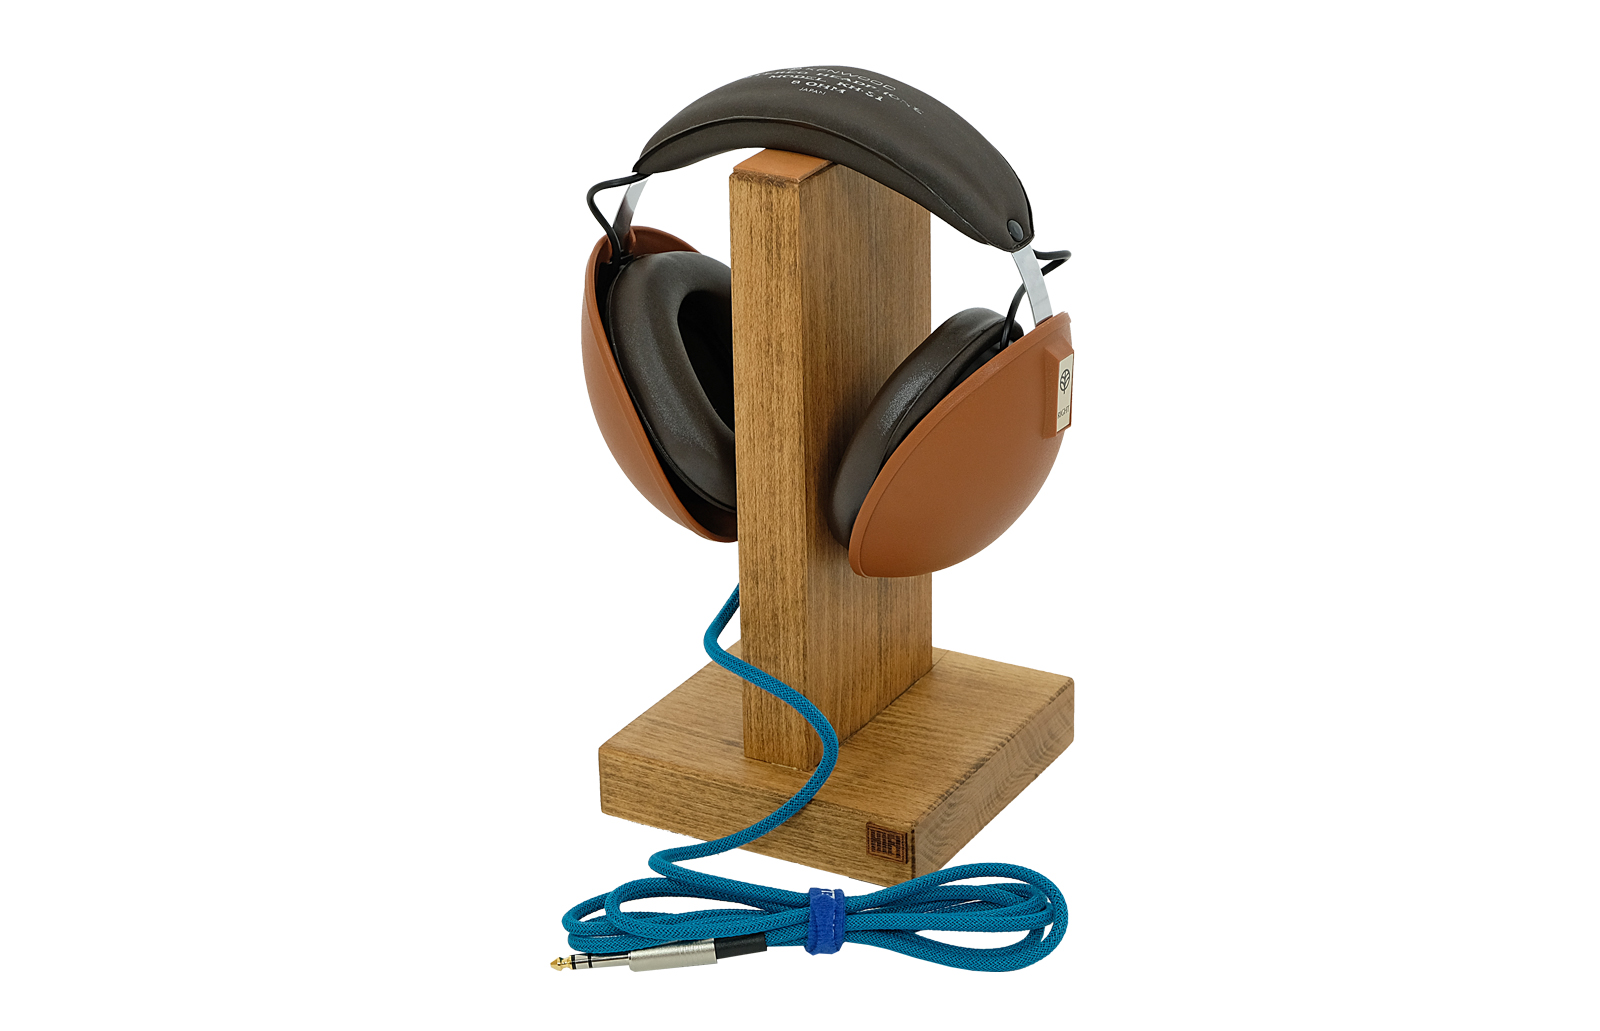 Kenwood KH-31 headphones